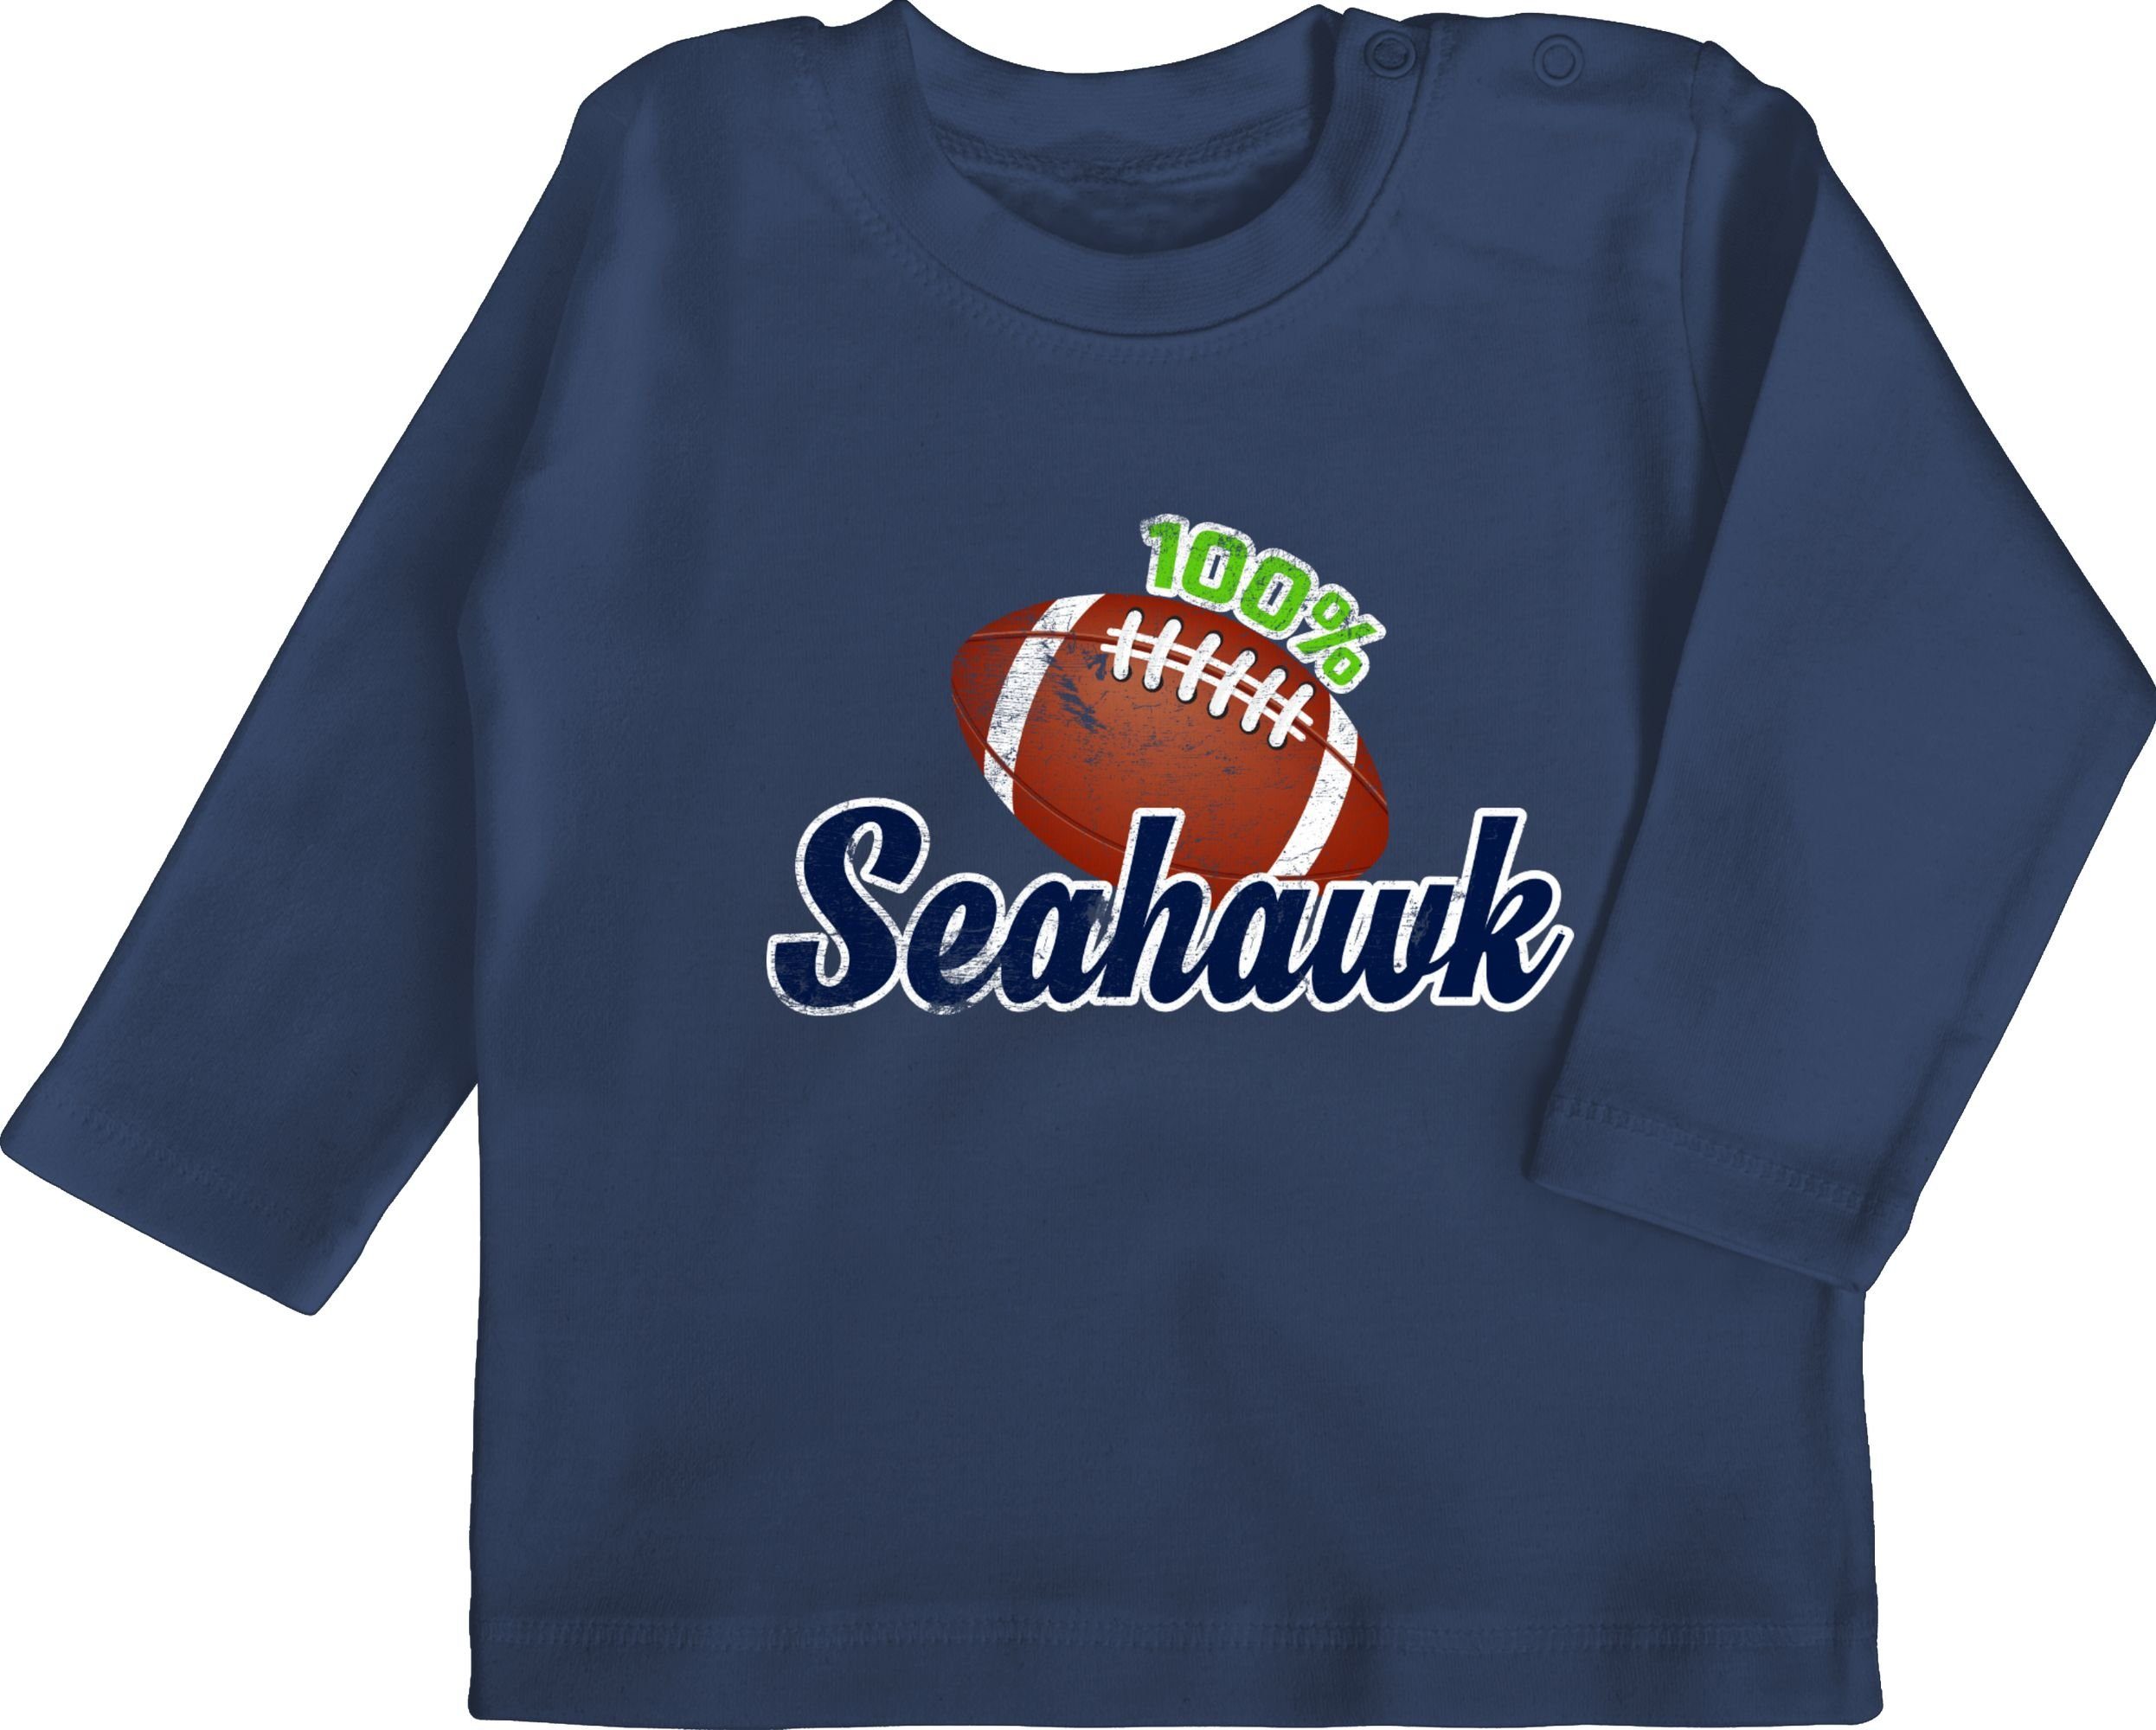 Shirtracer T-Shirt 100% Seahawk Sport & Bewegung Baby 1 Navy Blau